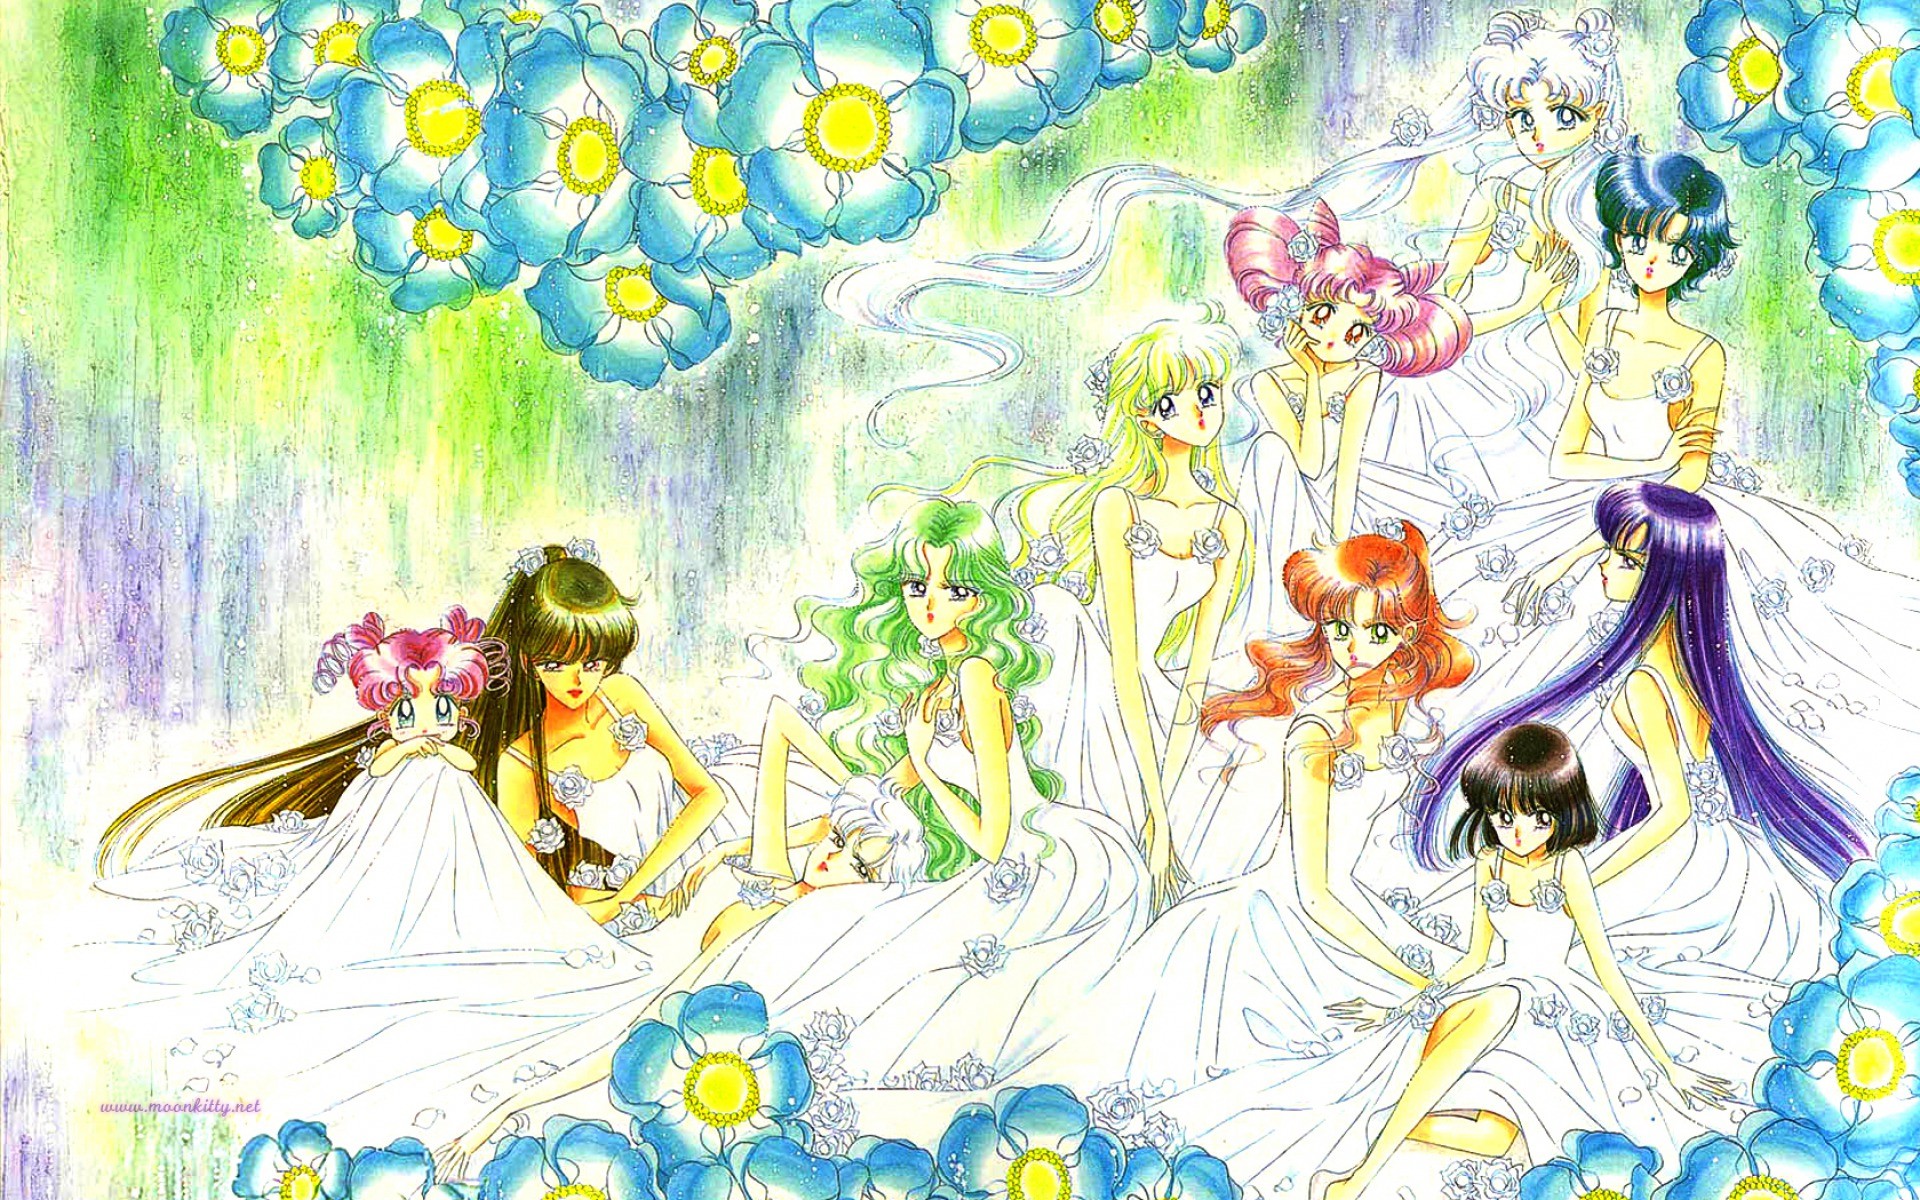 Previous Sailor Moon 62